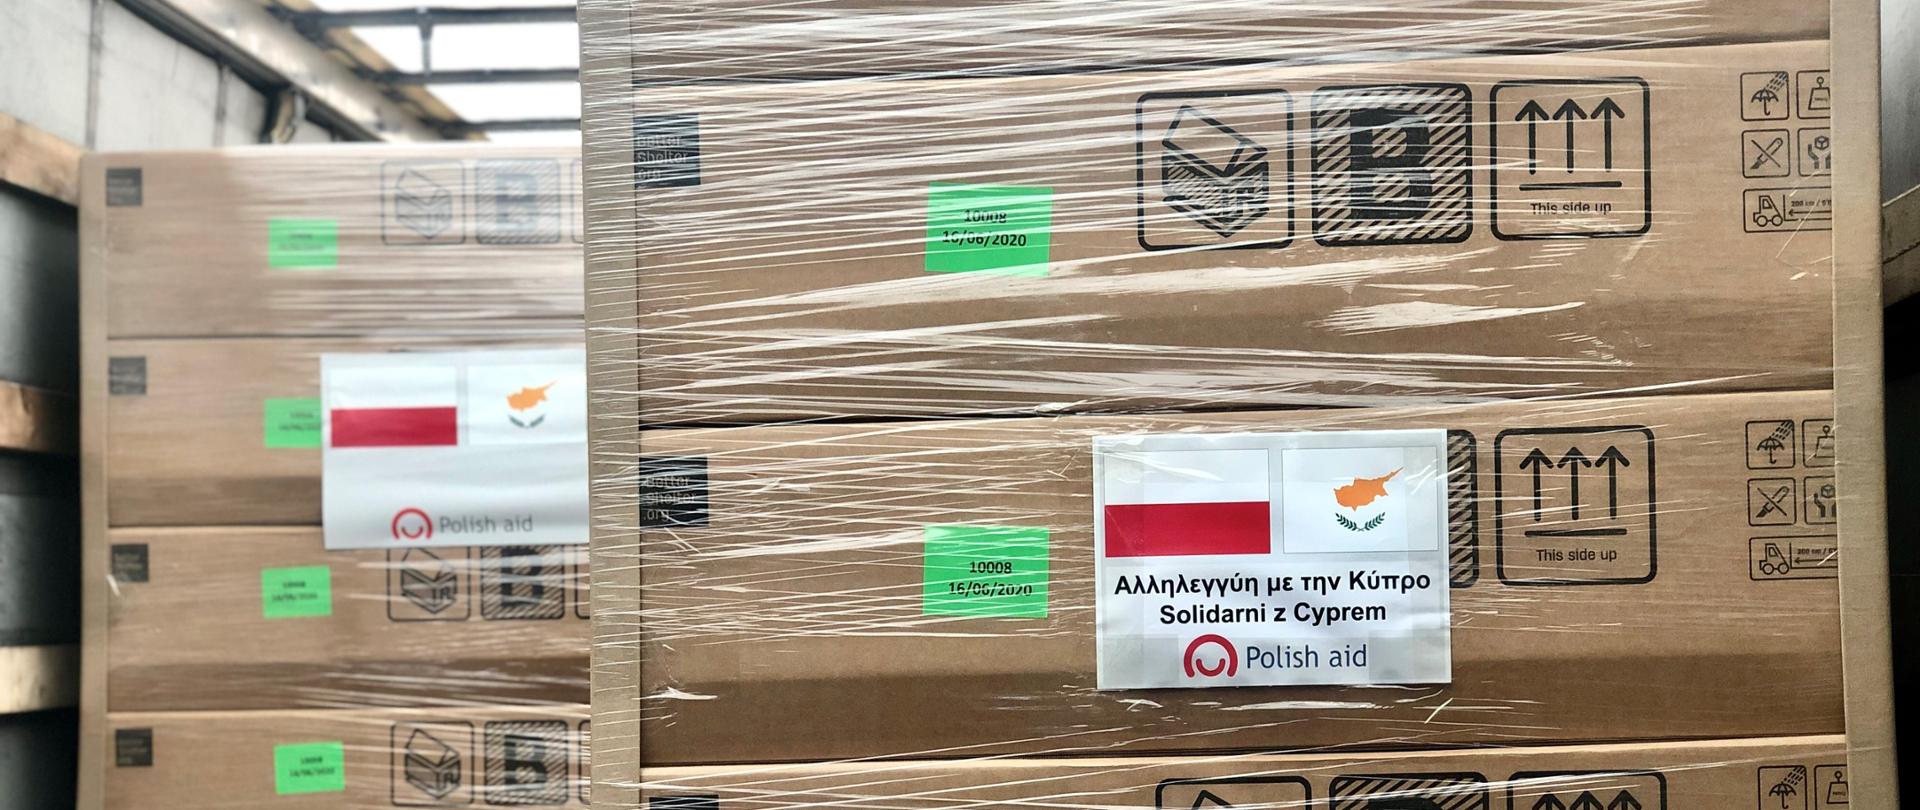 paczki zapakowane oklejone flagą Polski i Cypru oraz napisem w języku greckim Solidarni z Cyprem.